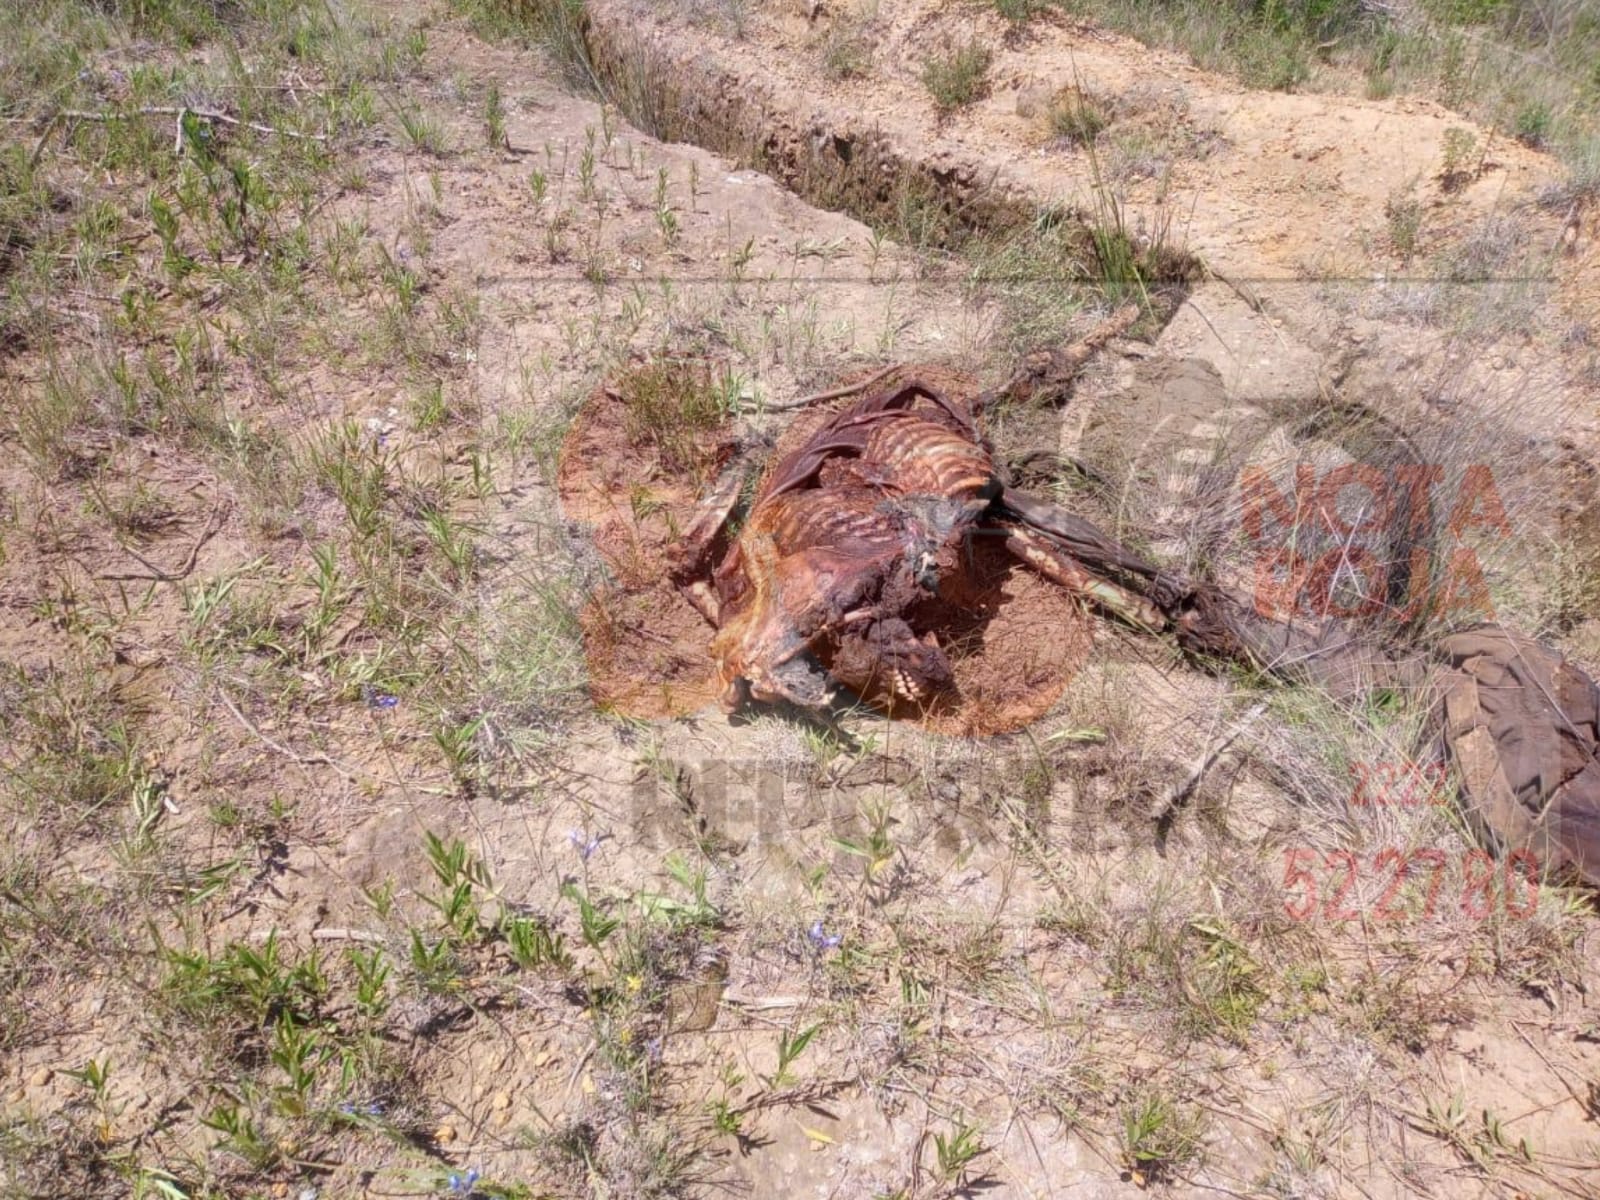 Hallan restos humanos presuntamente quemados en ácido en Atzitzintla